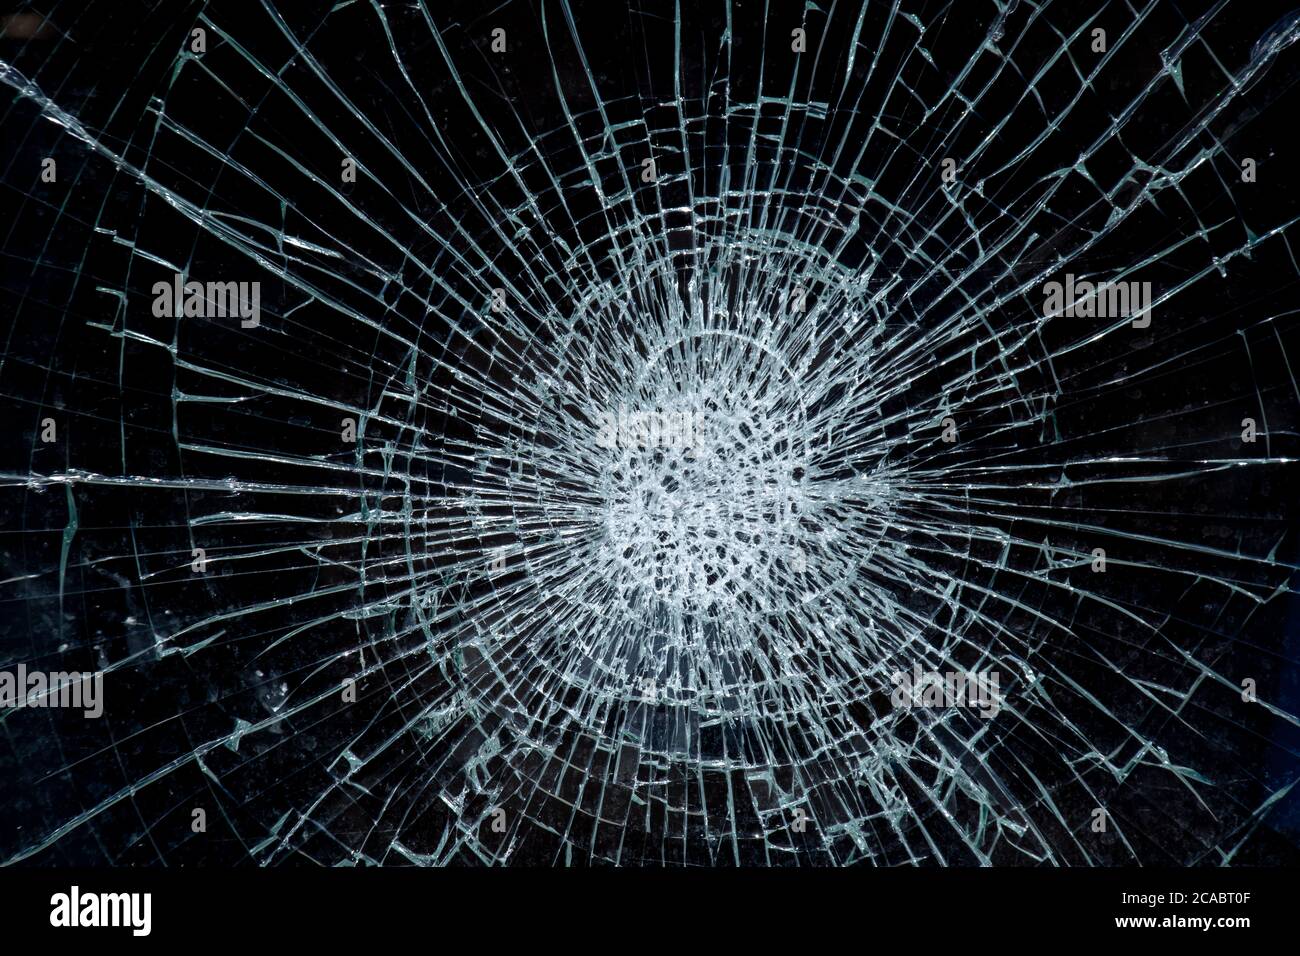 Zerbrochenes Glas auf schwarzem Hintergrund, kaputtes Fenster  Stockfotografie - Alamy